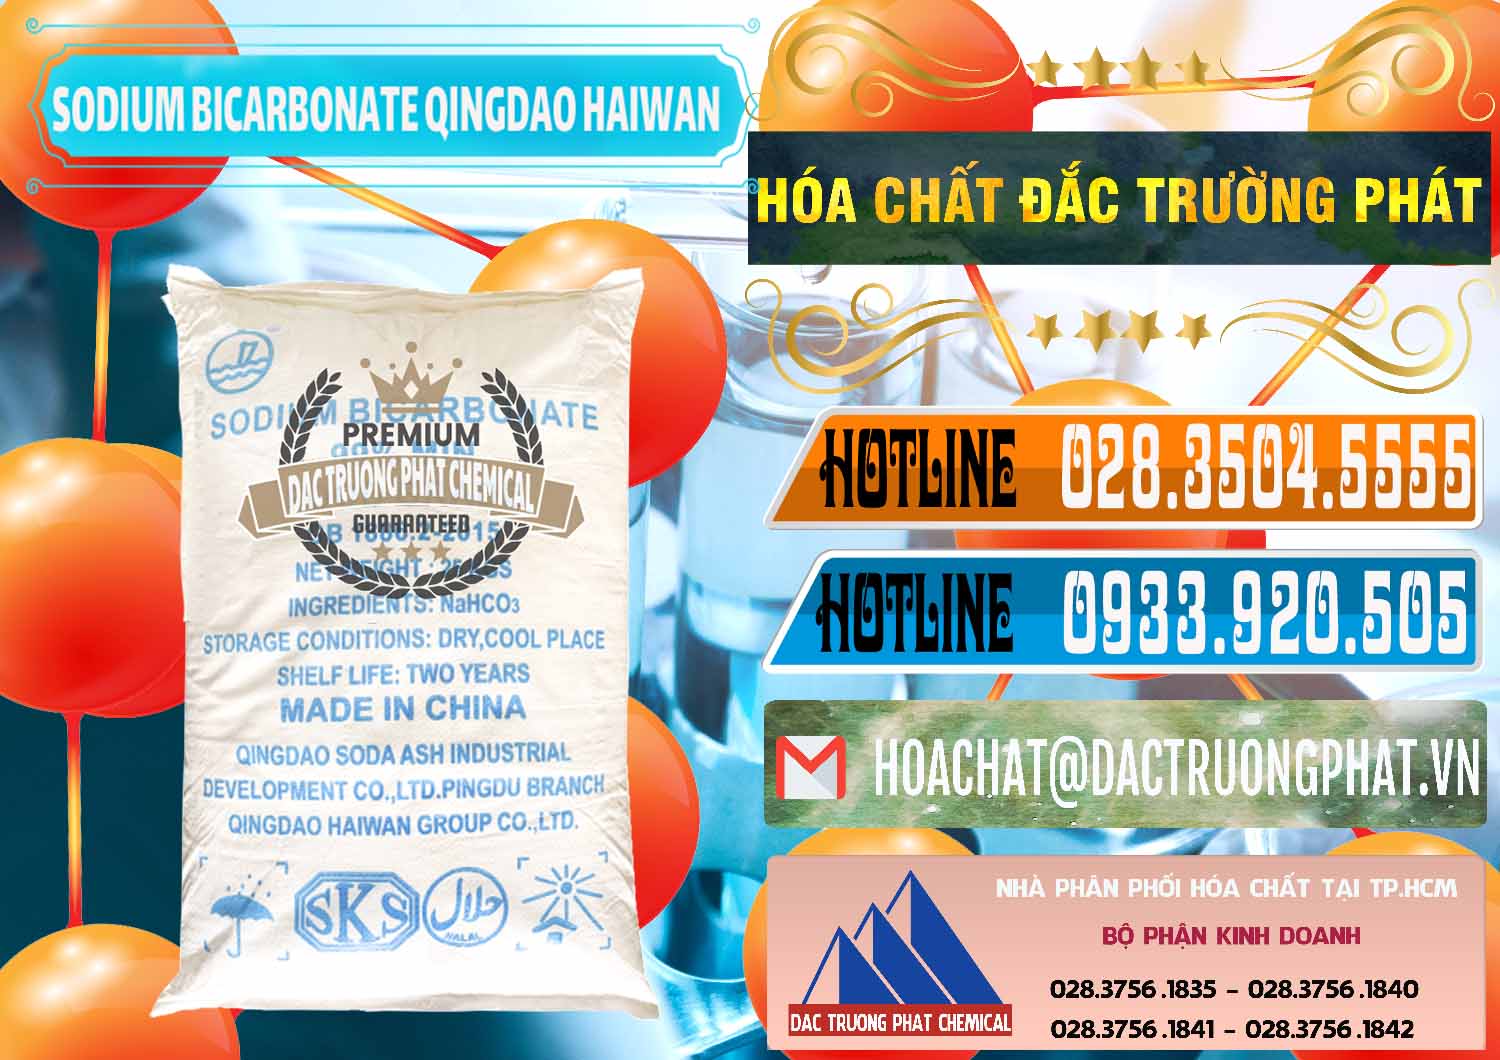 Đơn vị chuyên cung ứng ( bán ) Sodium Bicarbonate – Bicar NaHCO3 Food Grade Qingdao Haiwan Trung Quốc China - 0258 - Nhà cung ứng và phân phối hóa chất tại TP.HCM - stmp.net